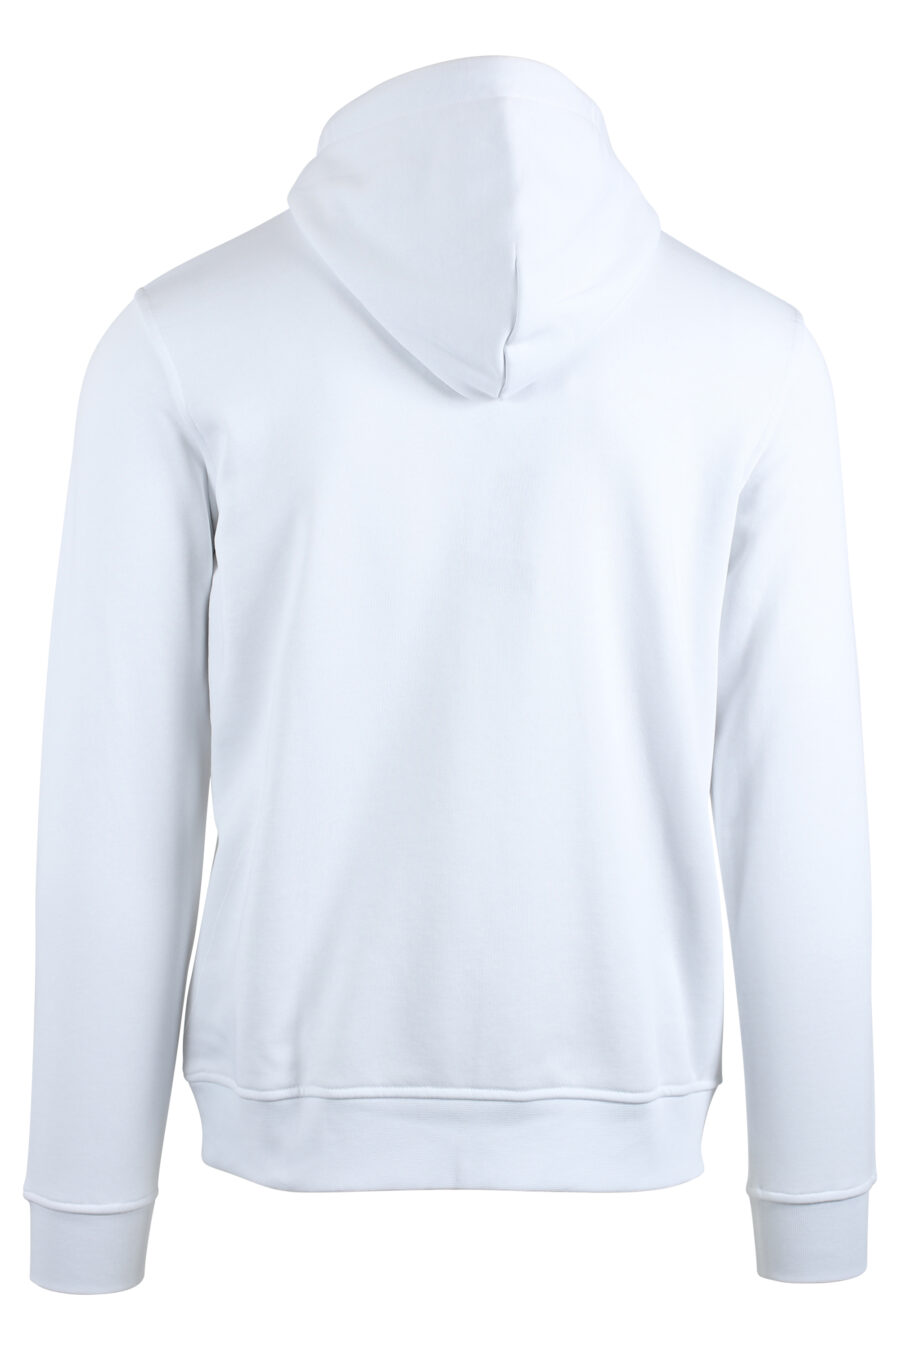 Weißes Kapuzensweatshirt mit weißem Logoaufnäher - IMG 4774